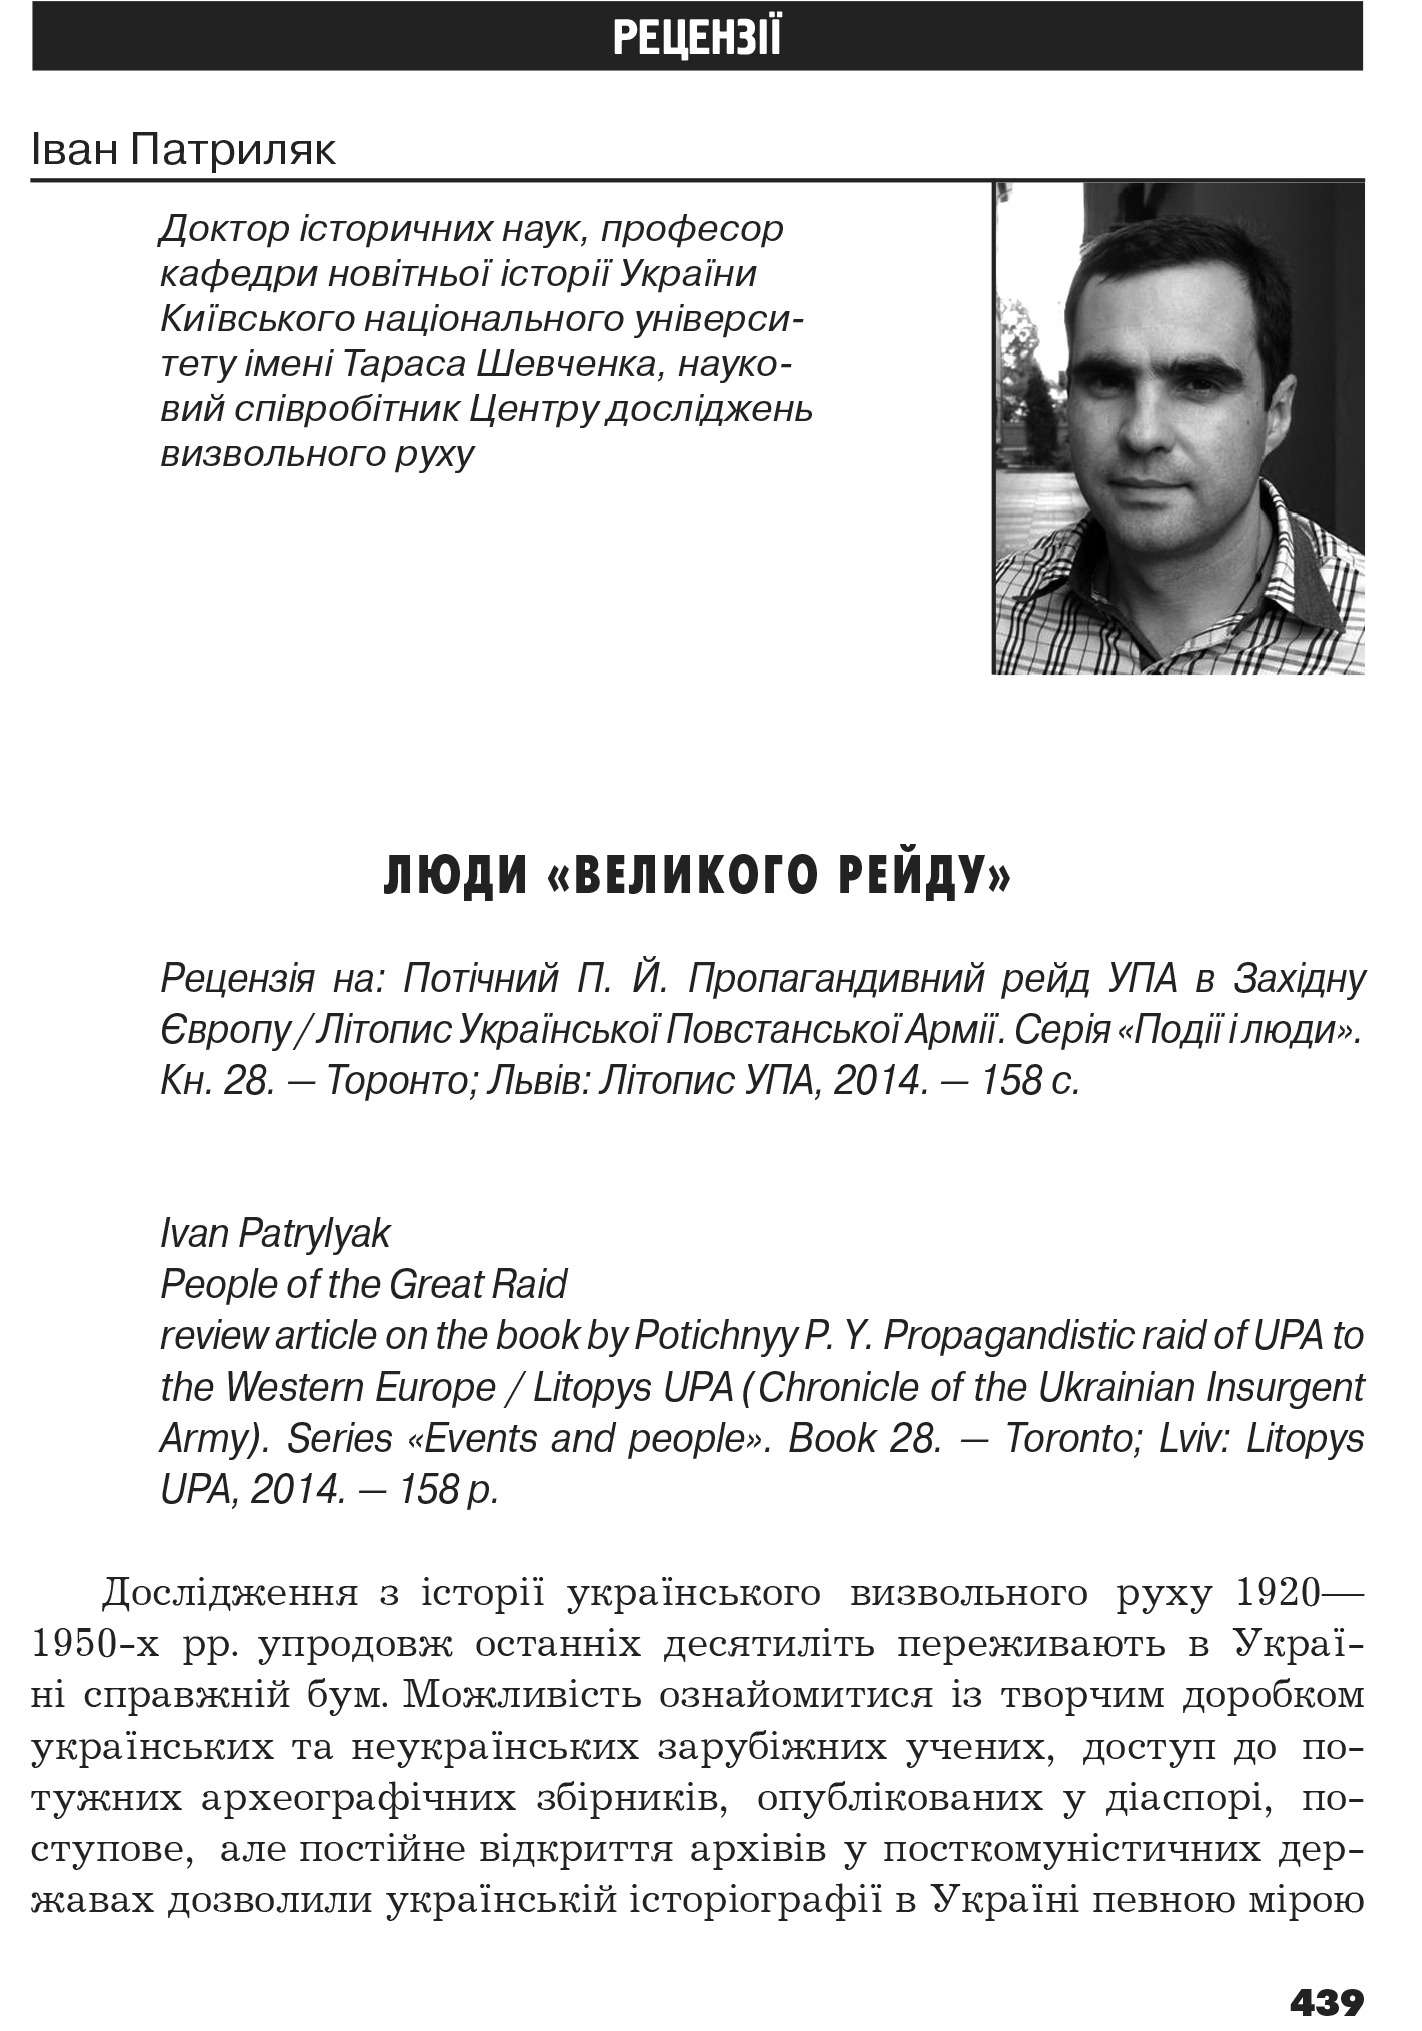 Український визвольний рух №19, ст. 439 - 445